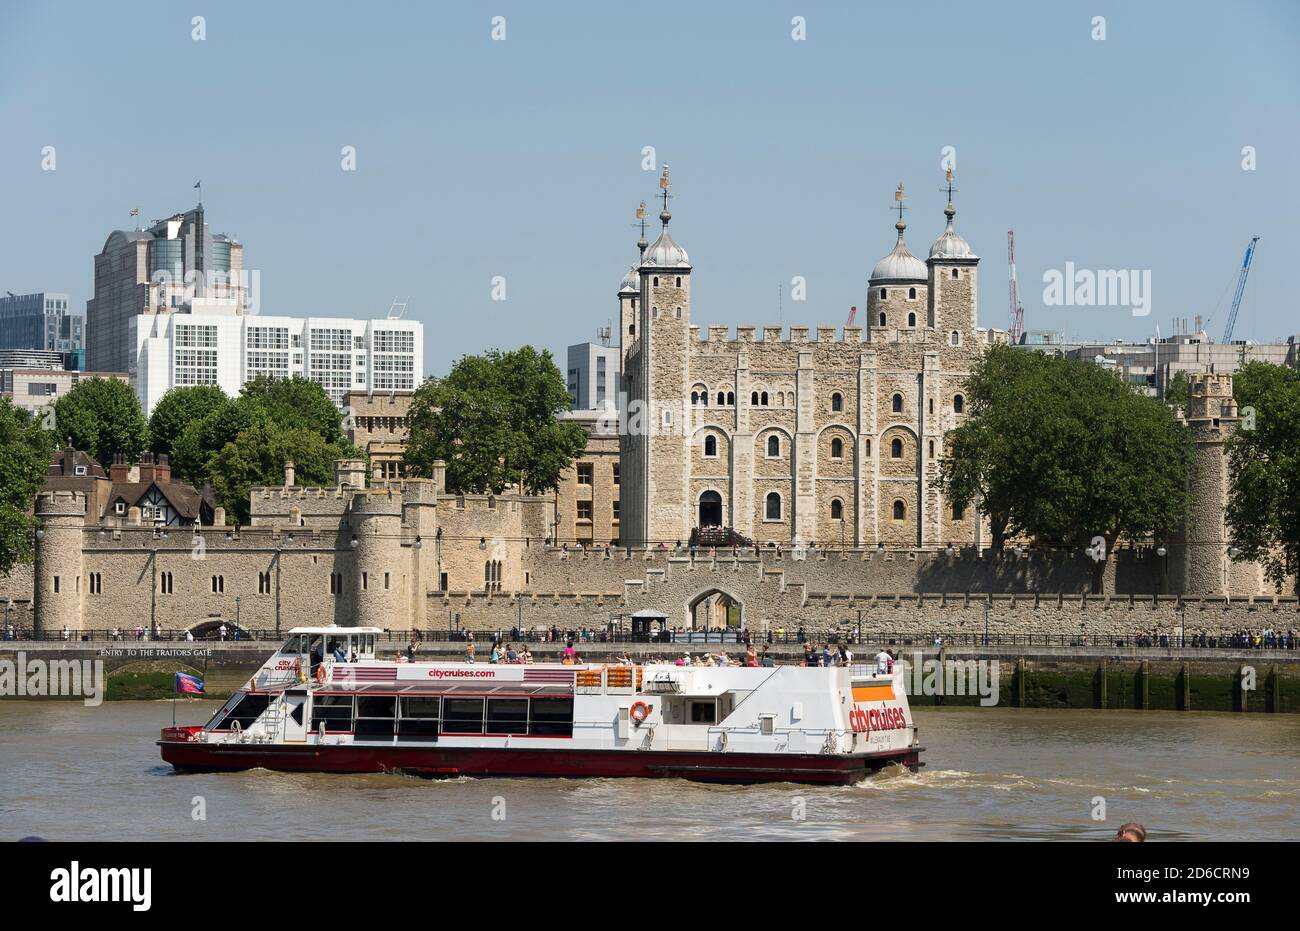 Flusskreuzfahrt am Tower of london auf der Themse in London, England Stockfoto